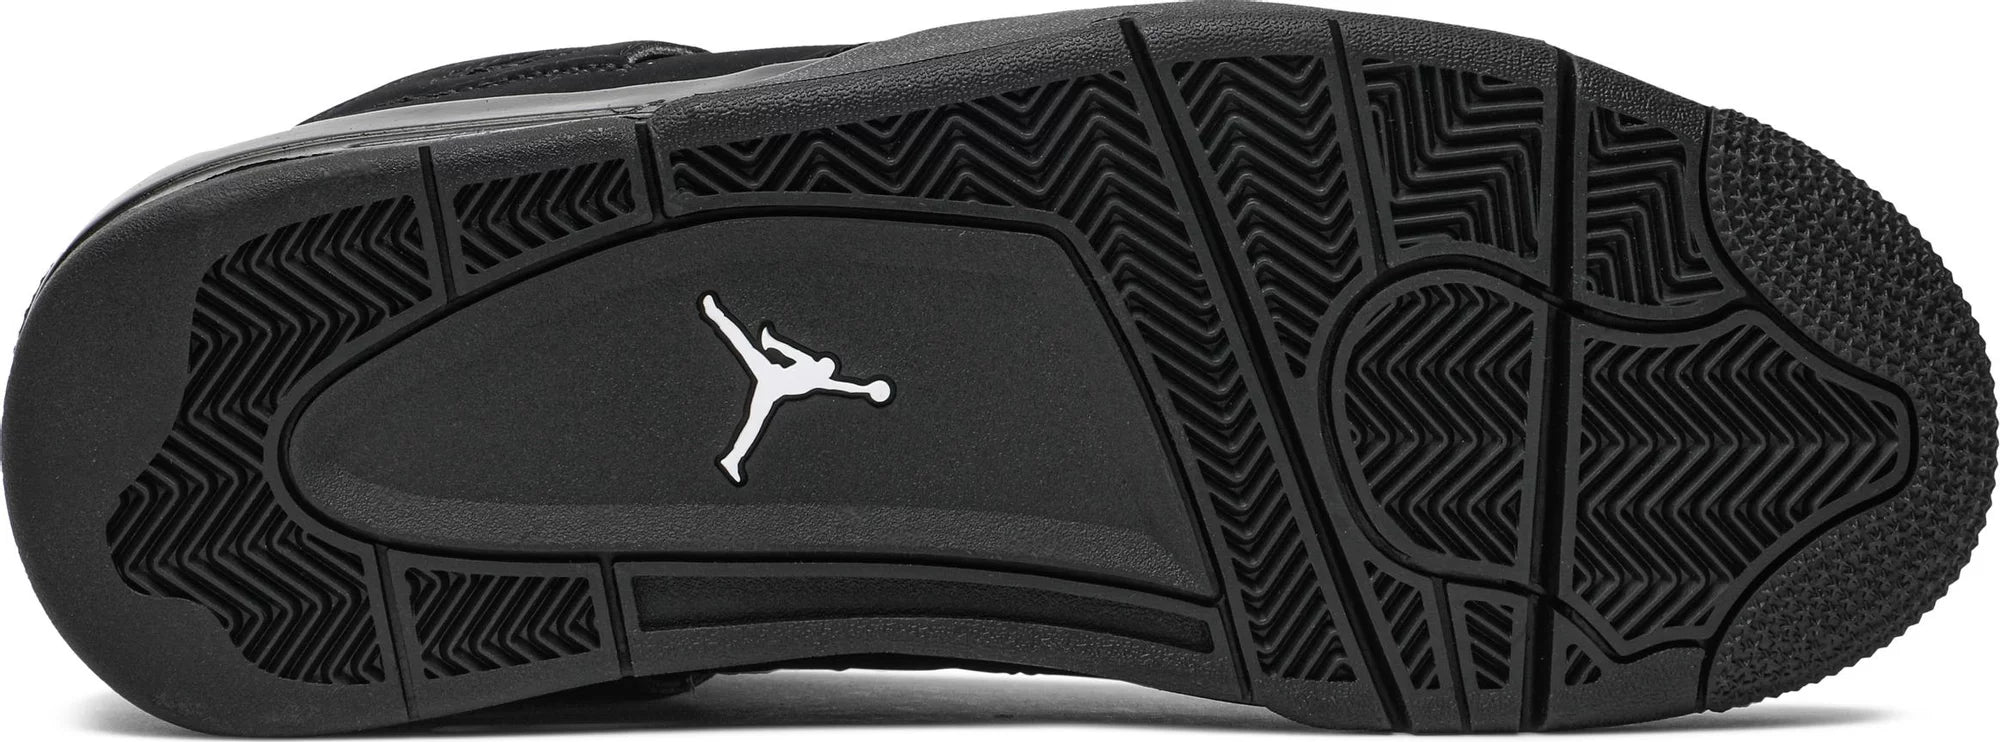 Air Jordan 4 Retro 'Black Cat' 2020